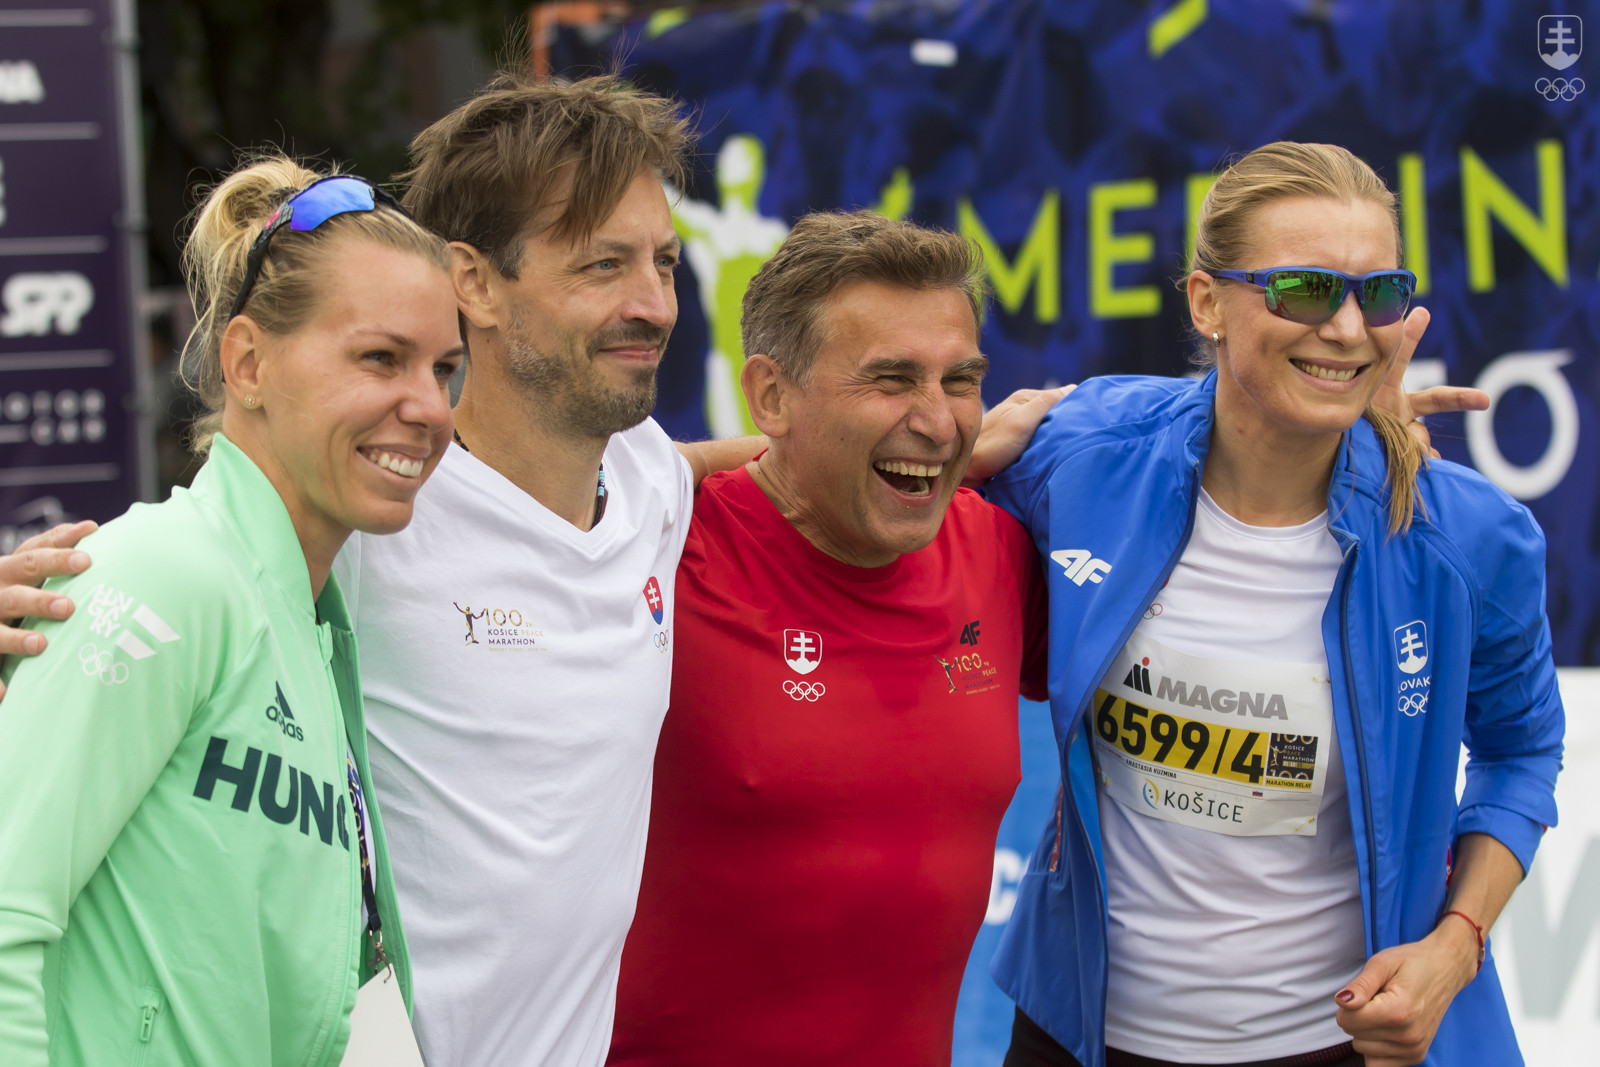 Členovia štafety V4 Olympians na Medzinárodnom maratóne mieru v Košiciach mali aj po dobehu veľmi dobrú náladu.